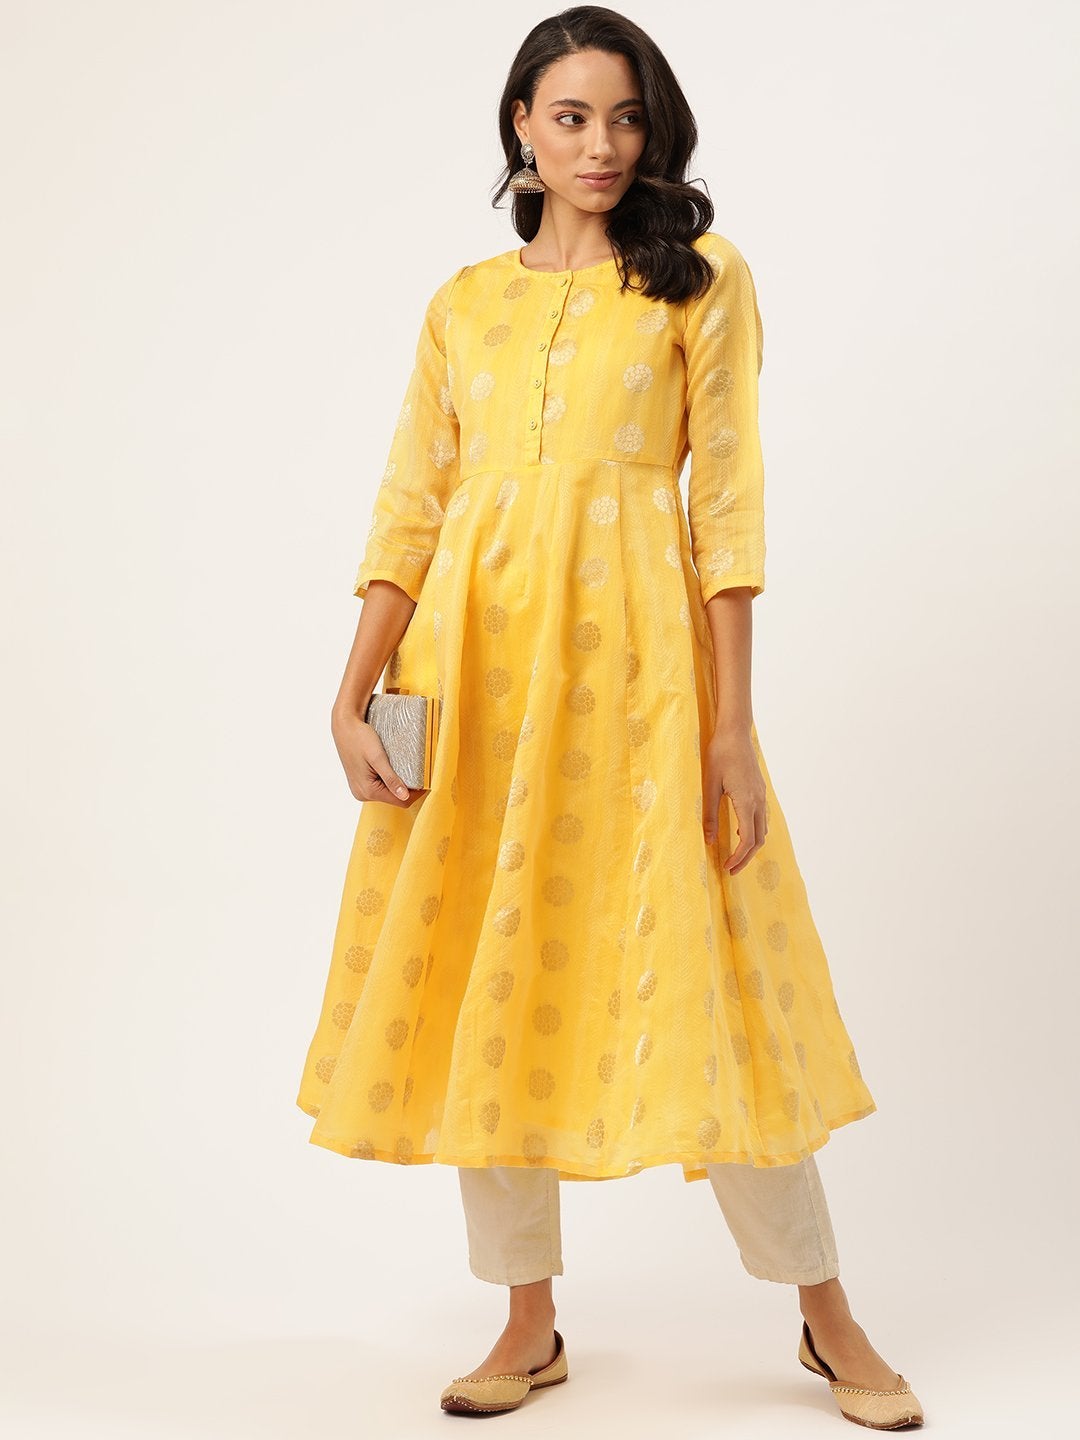 Women's Yellow Chanderi Jacquard Anarkali Kurta - SHAE